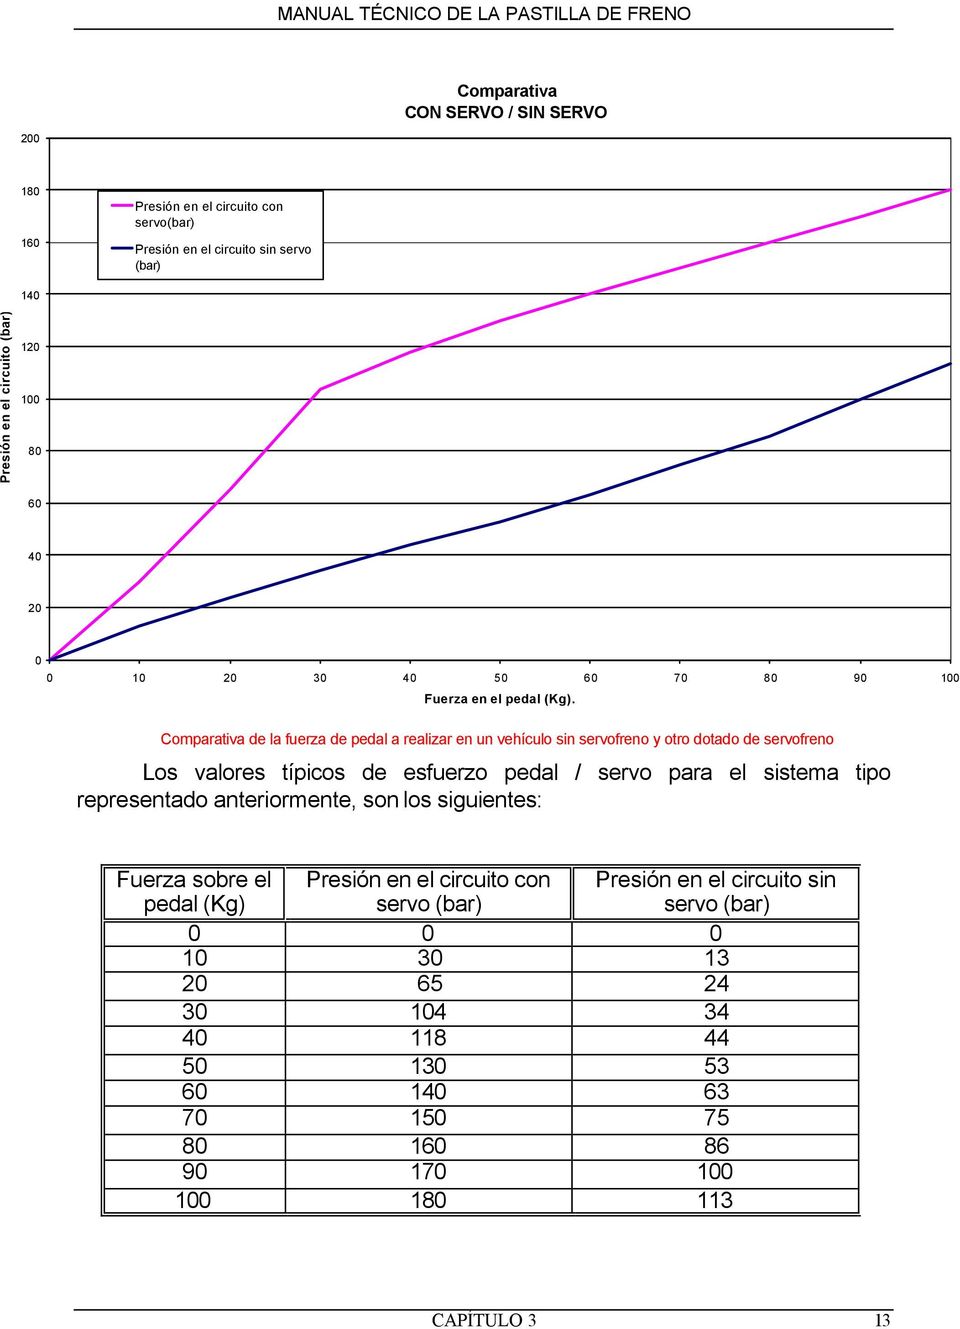 Comparativa de la fuerza de pedal a realizar en un vehículo sin servofreno y otro dotado de servofreno Los valores típicos de esfuerzo pedal / servo para el sistema tipo